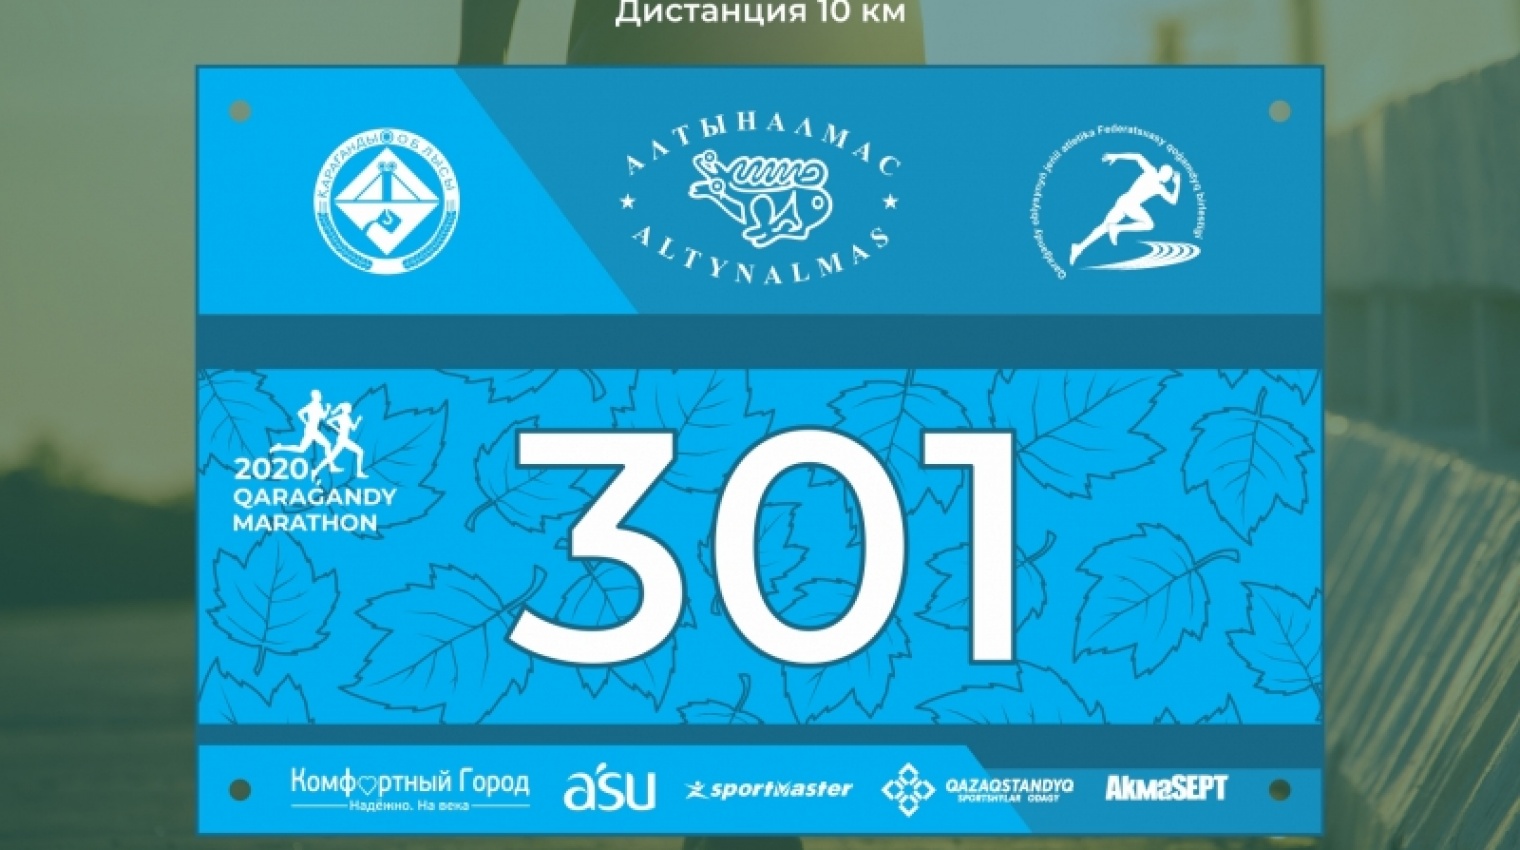 Дистанции «Qaragandy Marathon 2020» - 10 километров